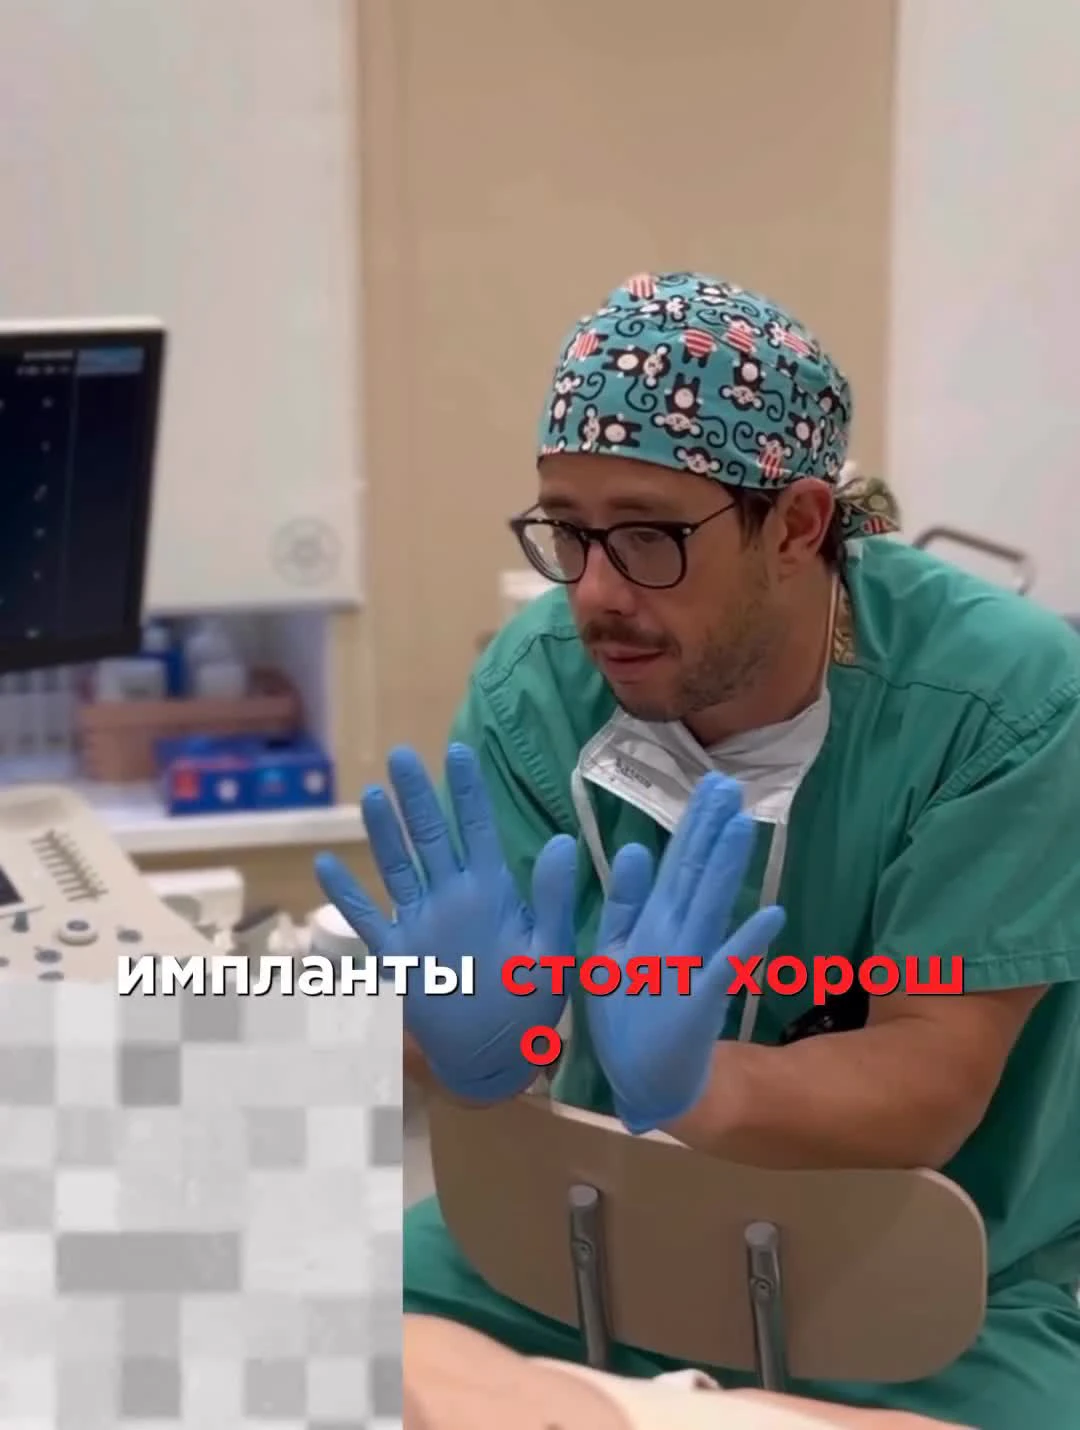 Не знаем, как изменится форма груди»: беременная Костенко пришла на осмотр  к доктору, сделавшему ей бюст | STARHIT